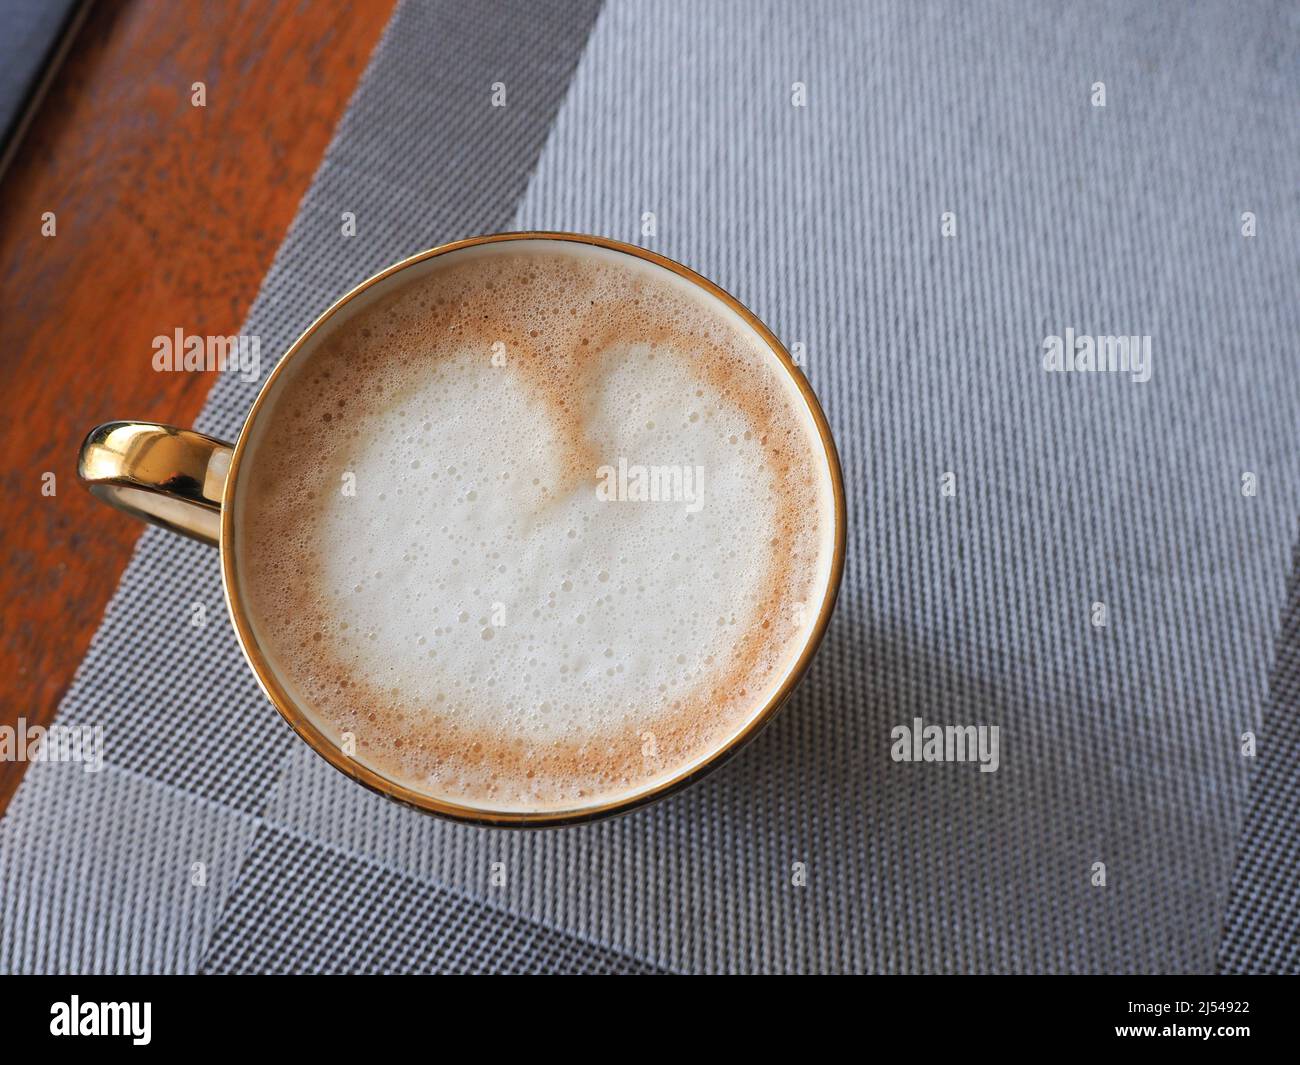 Gros plan d'une tasse de café vue d'en haut montrant l'art latte en forme de coeur Banque D'Images